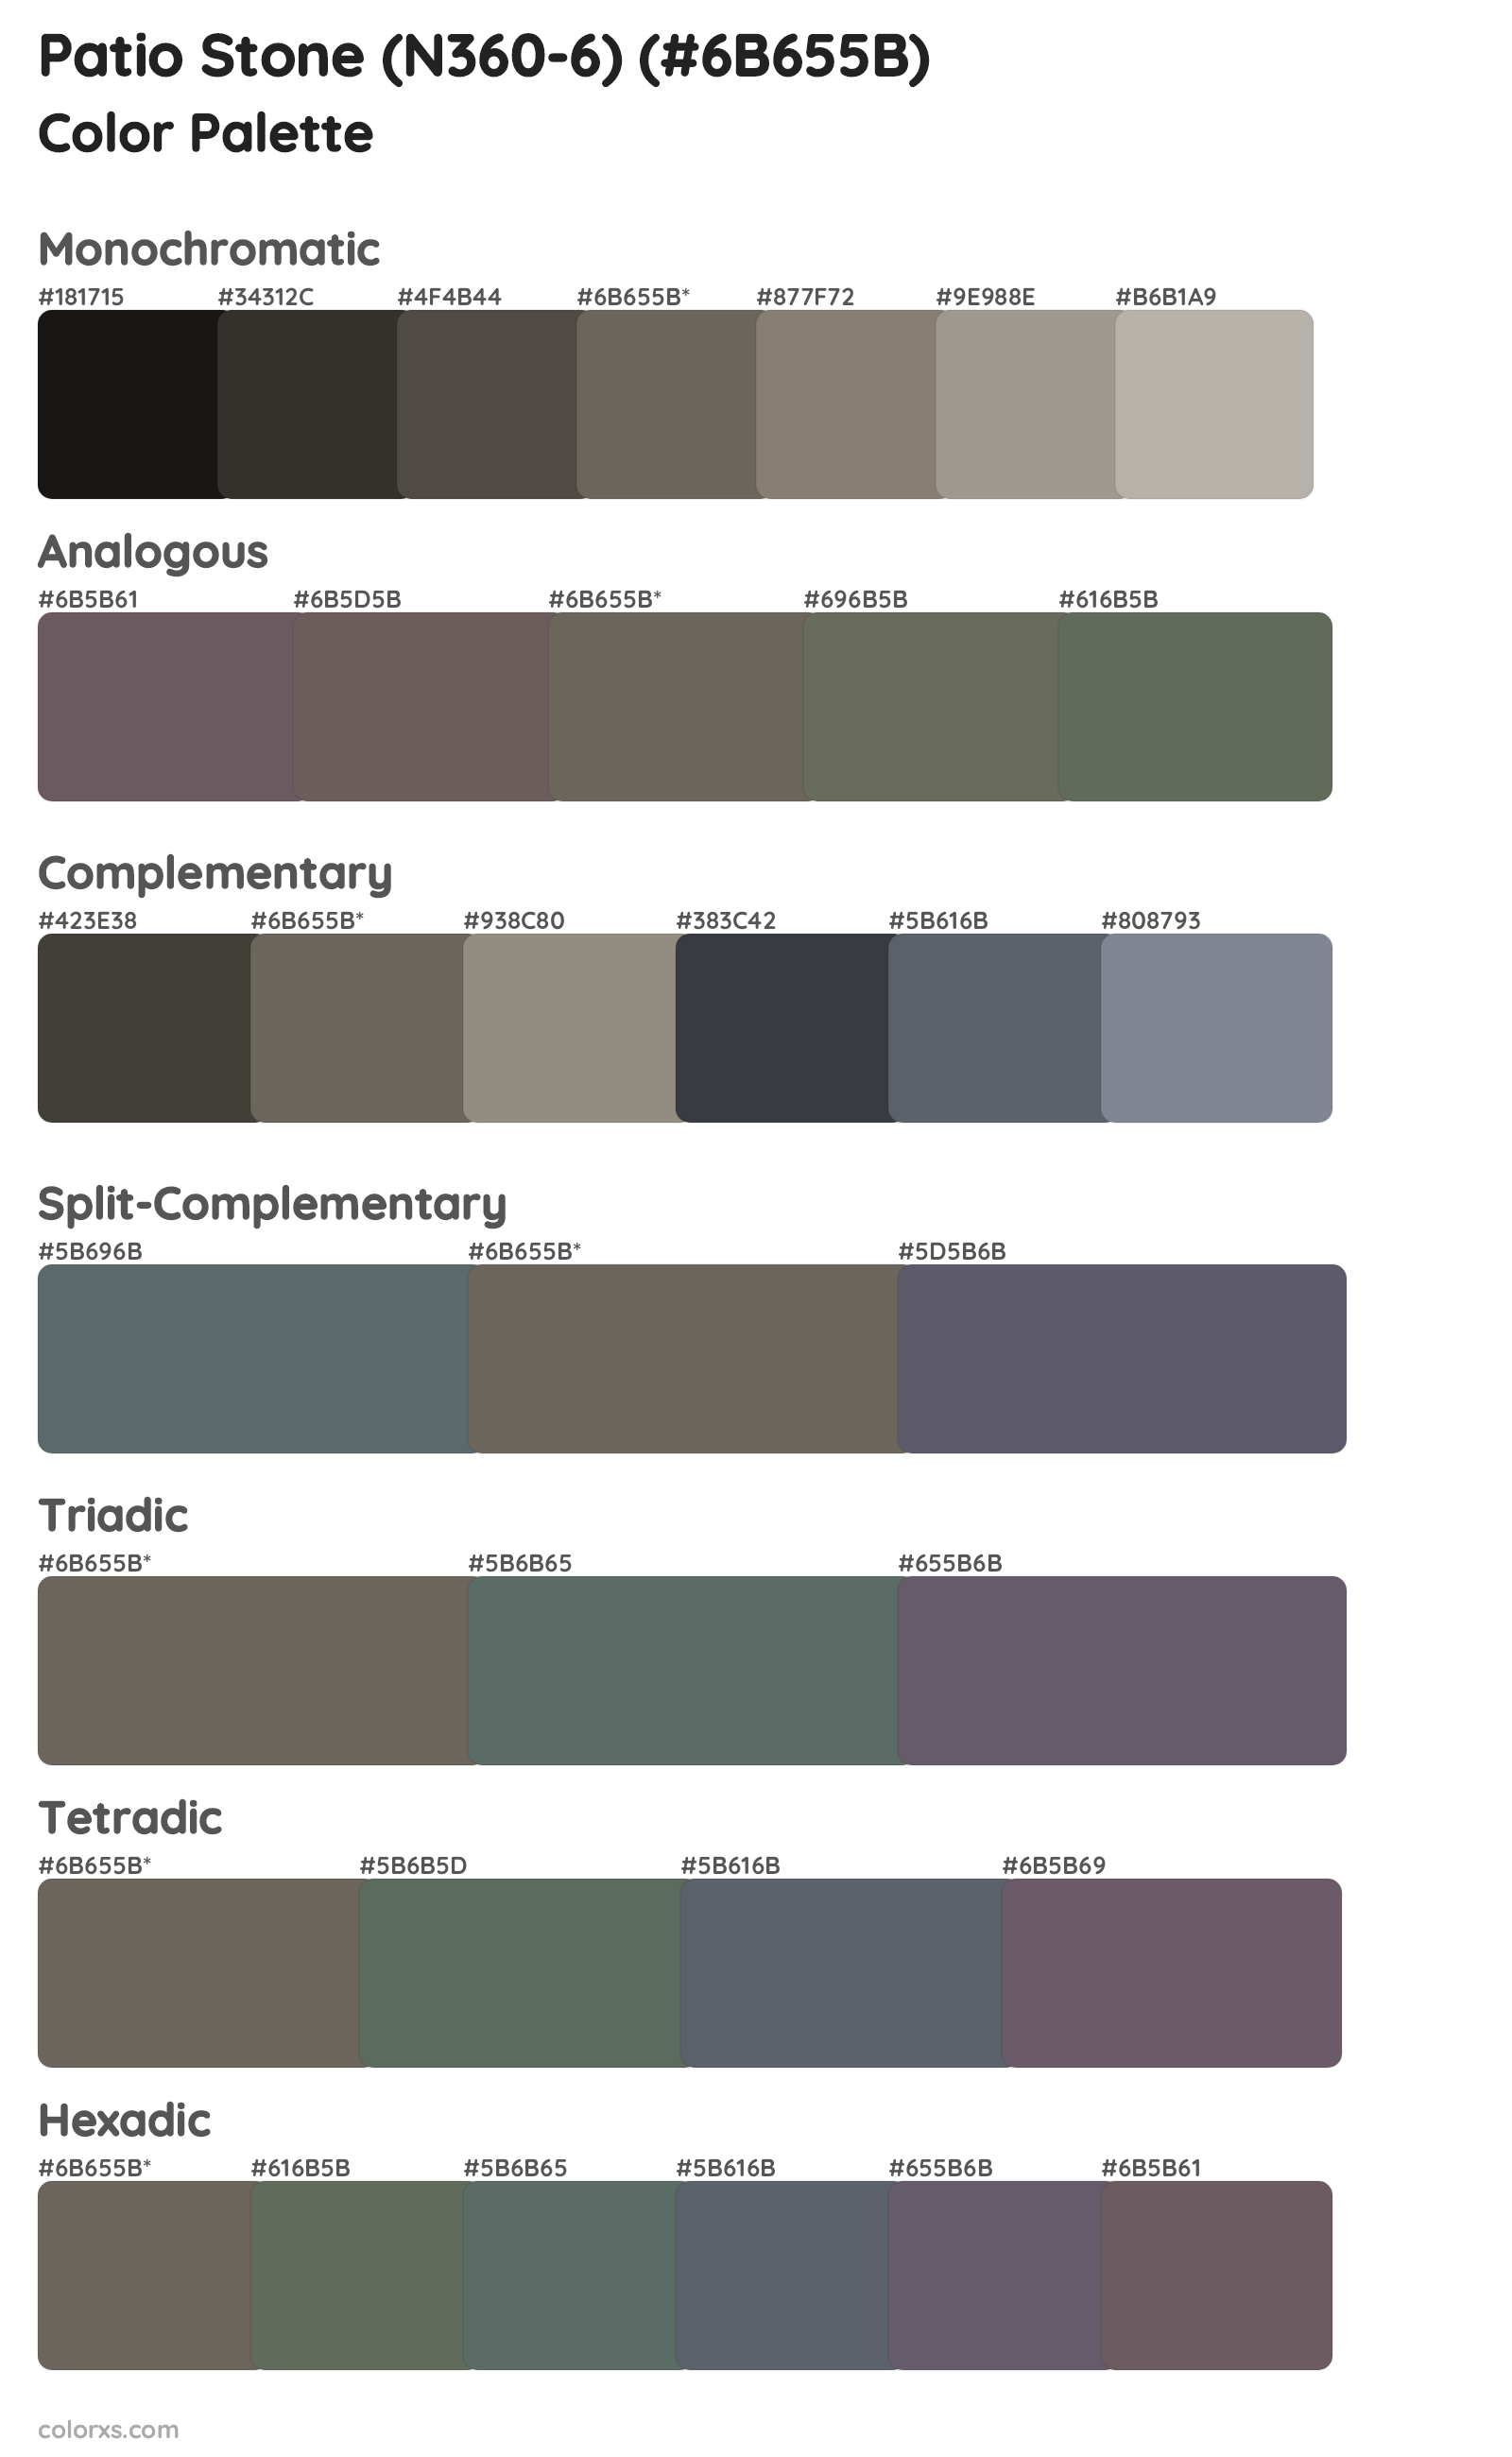 Patio Stone (N360-6) Color Scheme Palettes